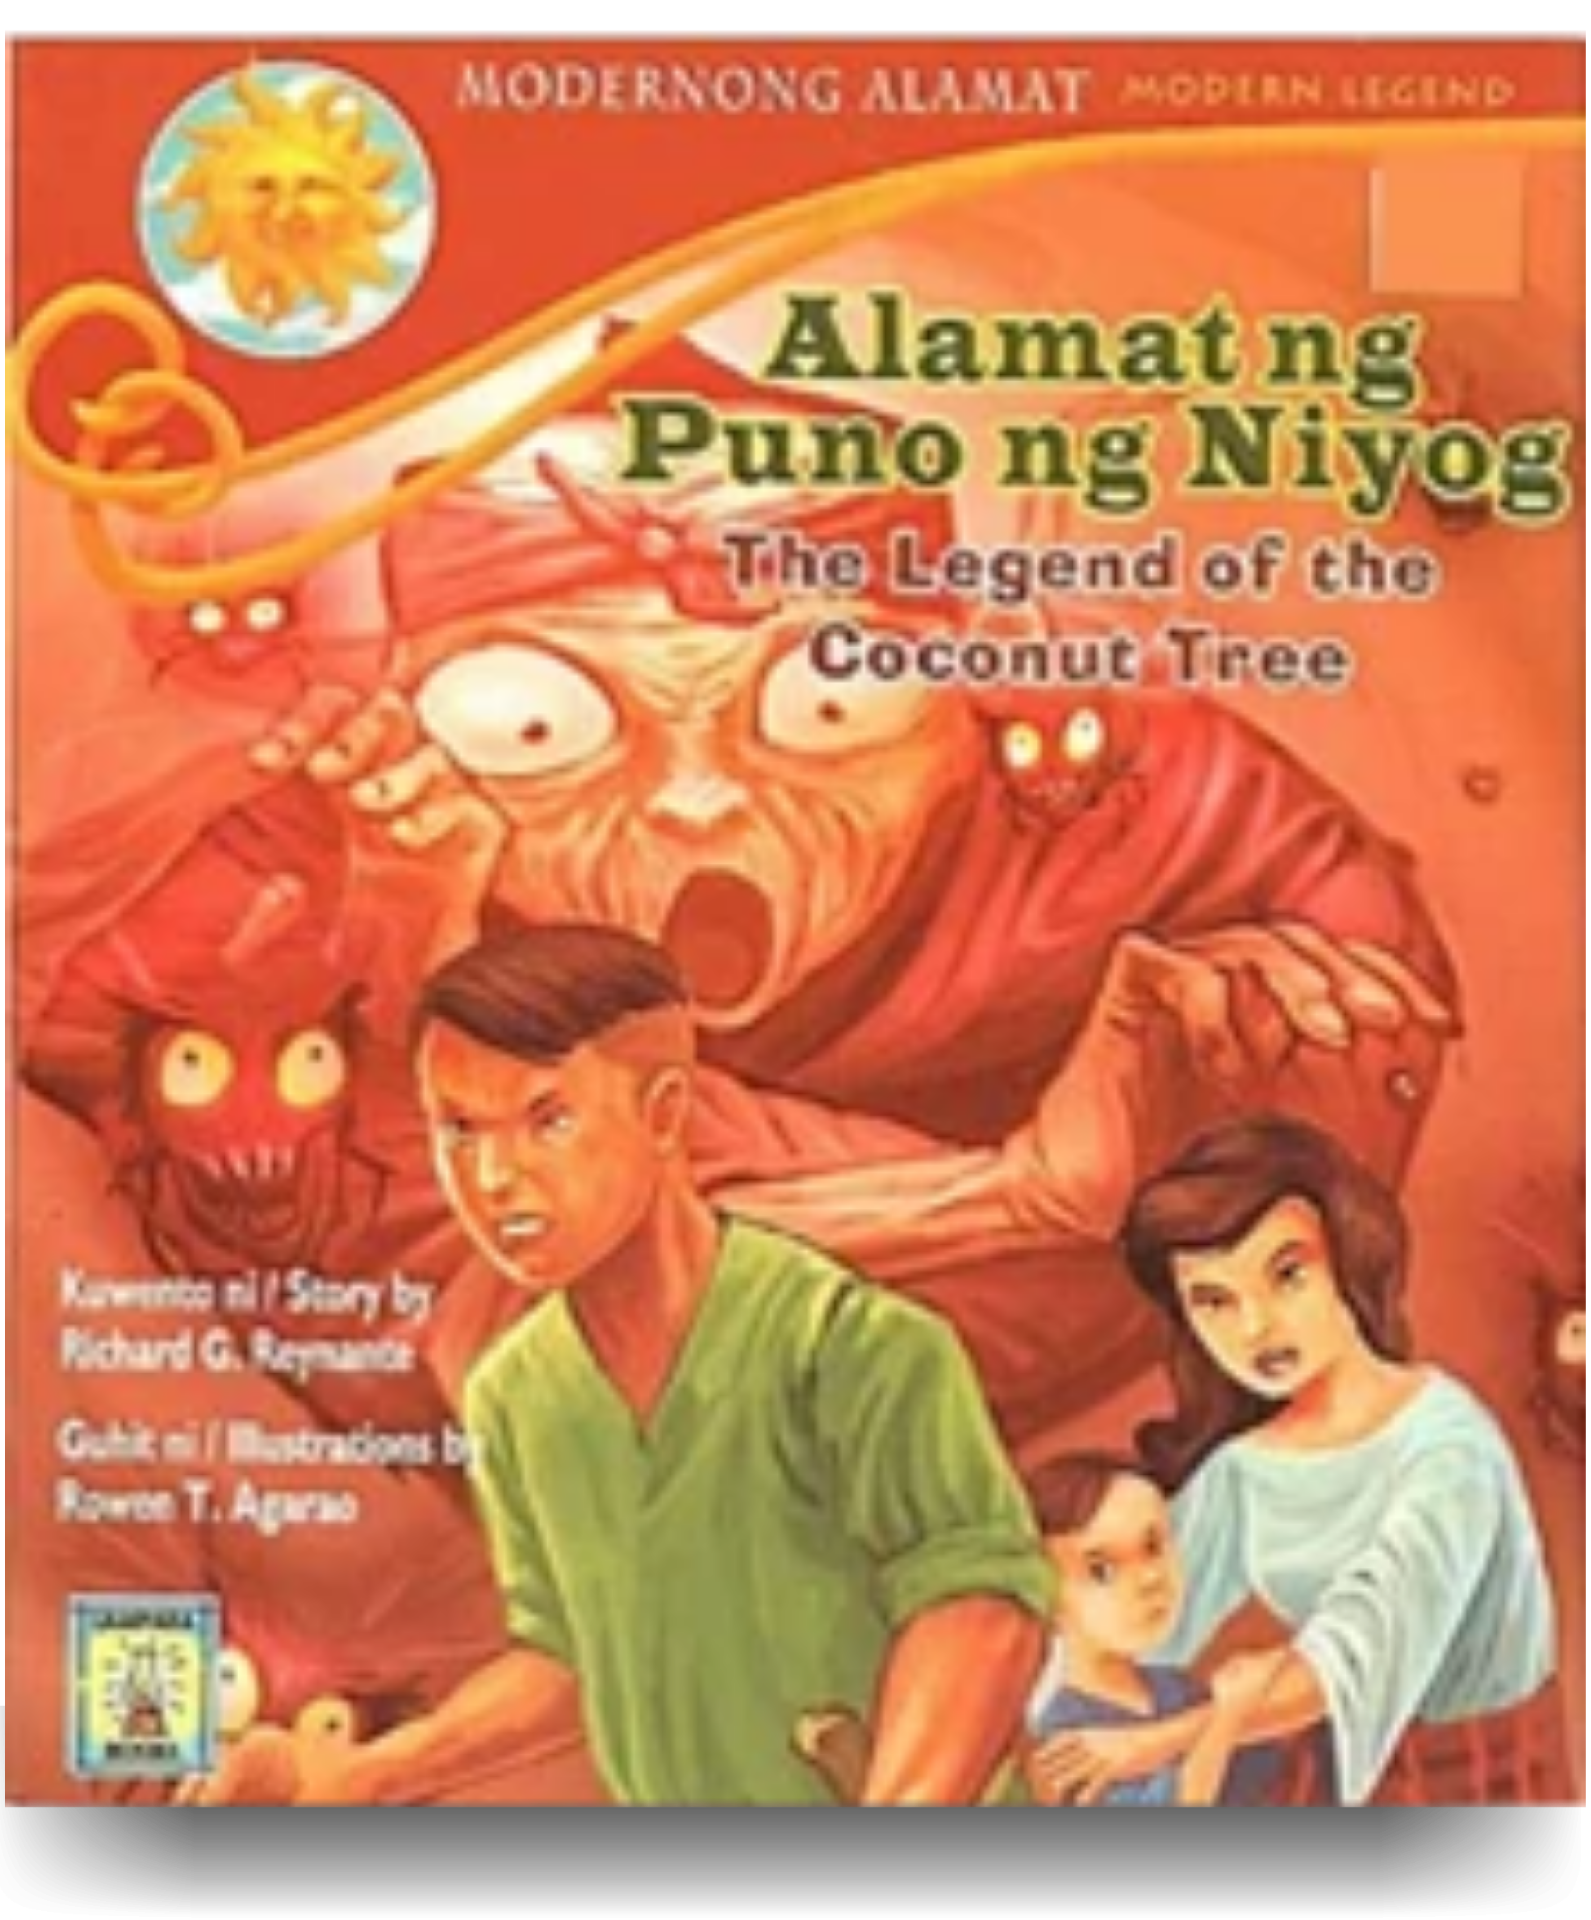 Alamat ng Puno ng Niyog (The Legend of the Coconut Tree)